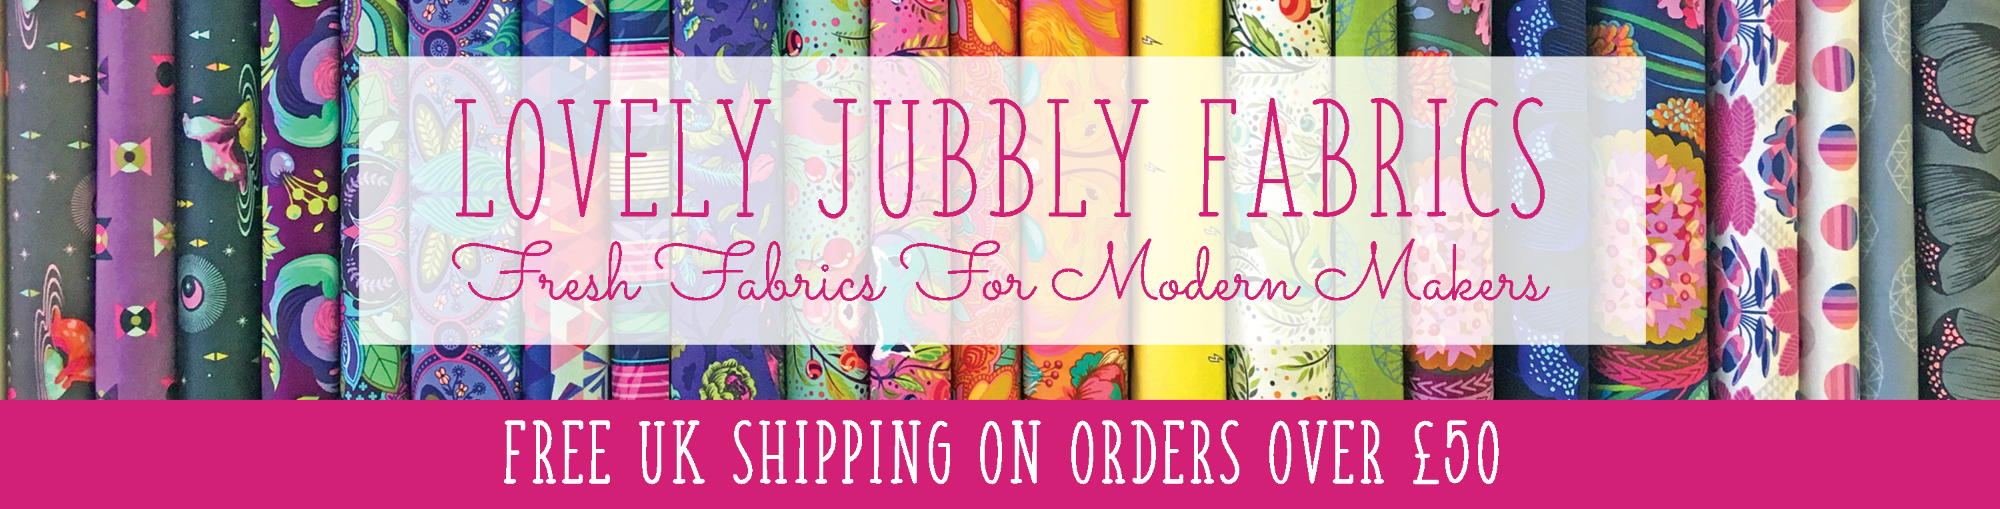 Lovely Jubbly Fabrics